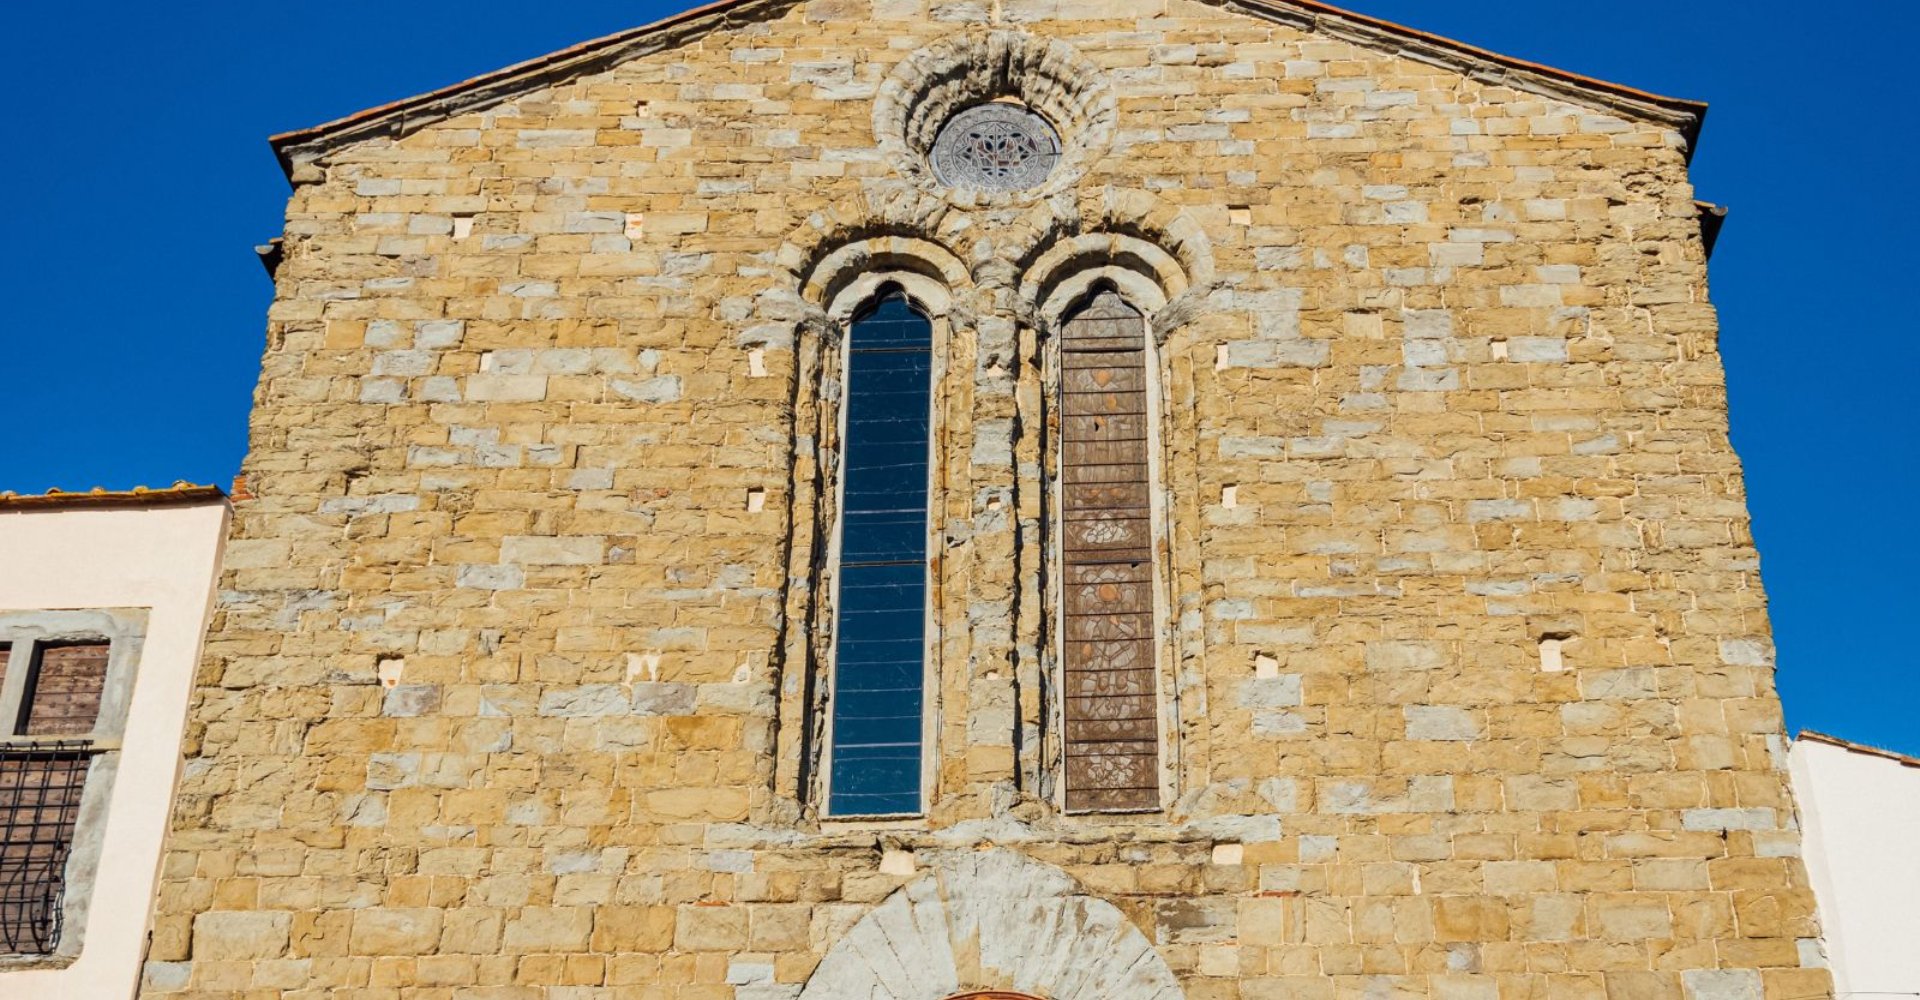 Facade of the Church of St. Francis in Castiglion Fiorentino